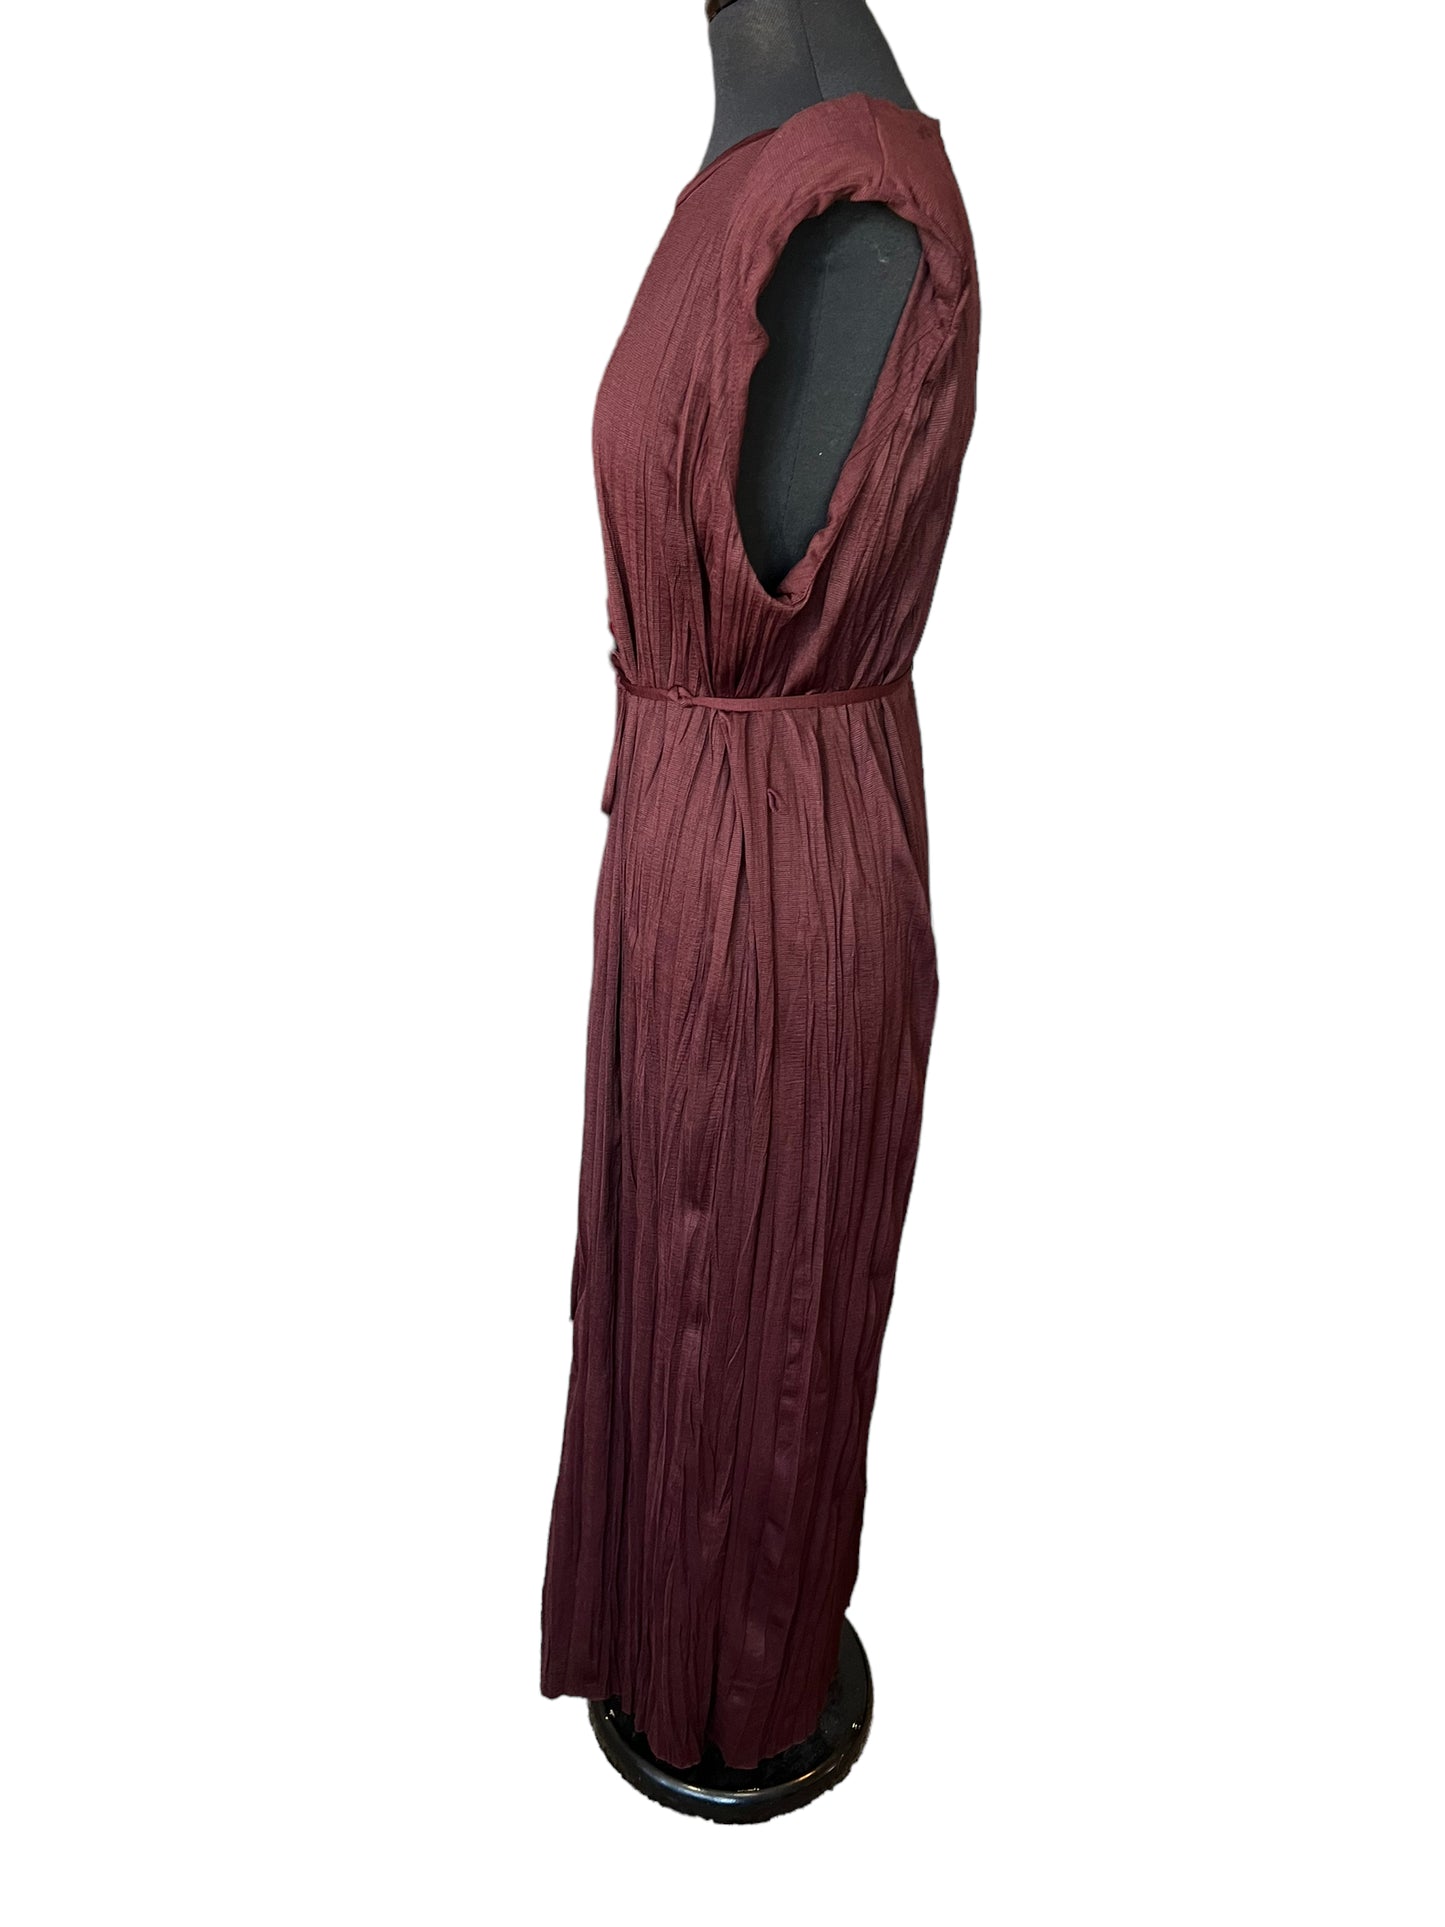 Zara Burgundy Dress